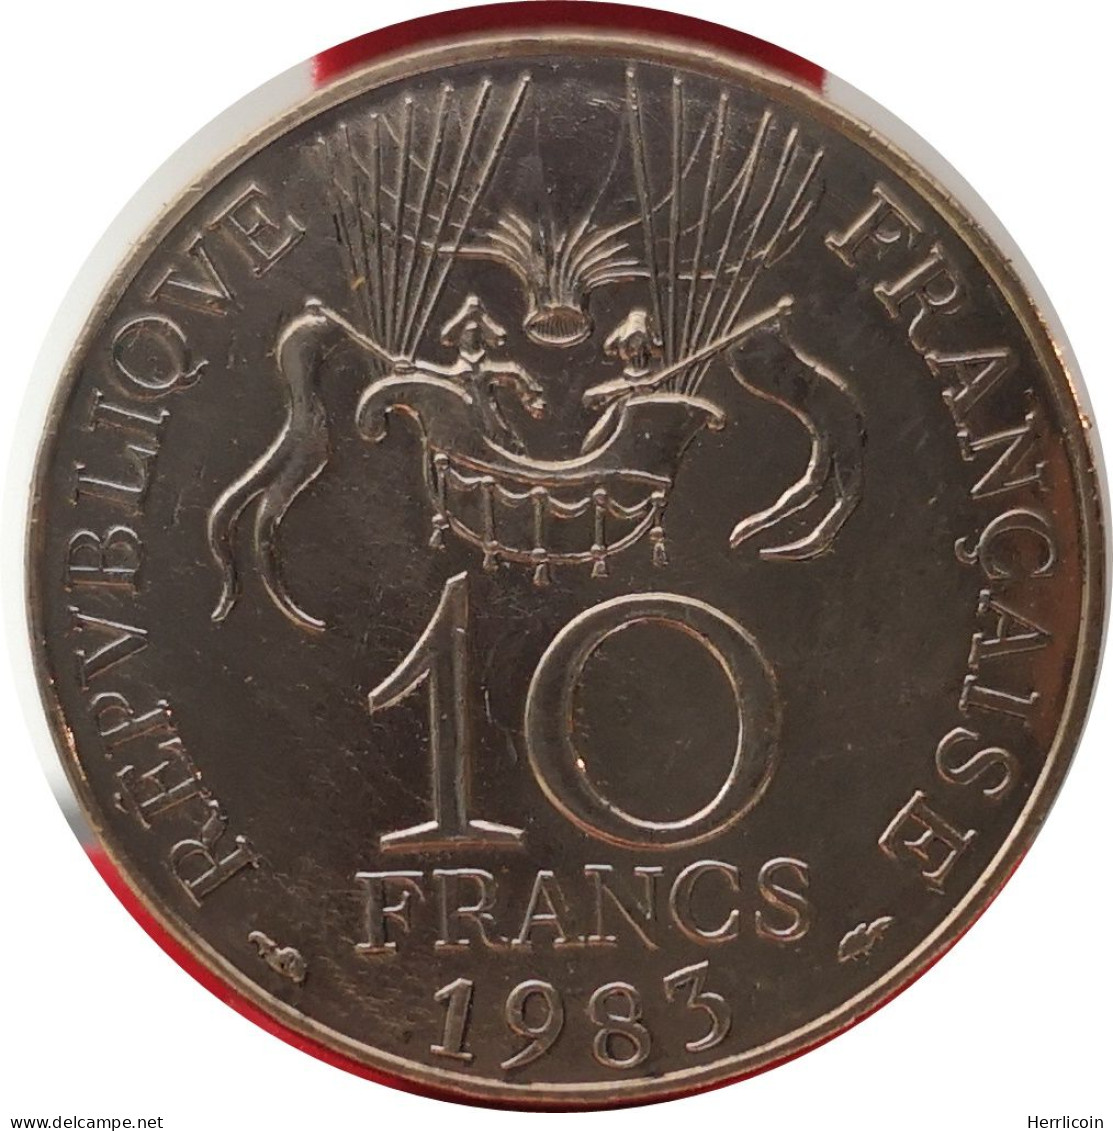 Monnaie France - 1983 Tranche A - 10 Francs Conquête De L'Espace - Commemorative